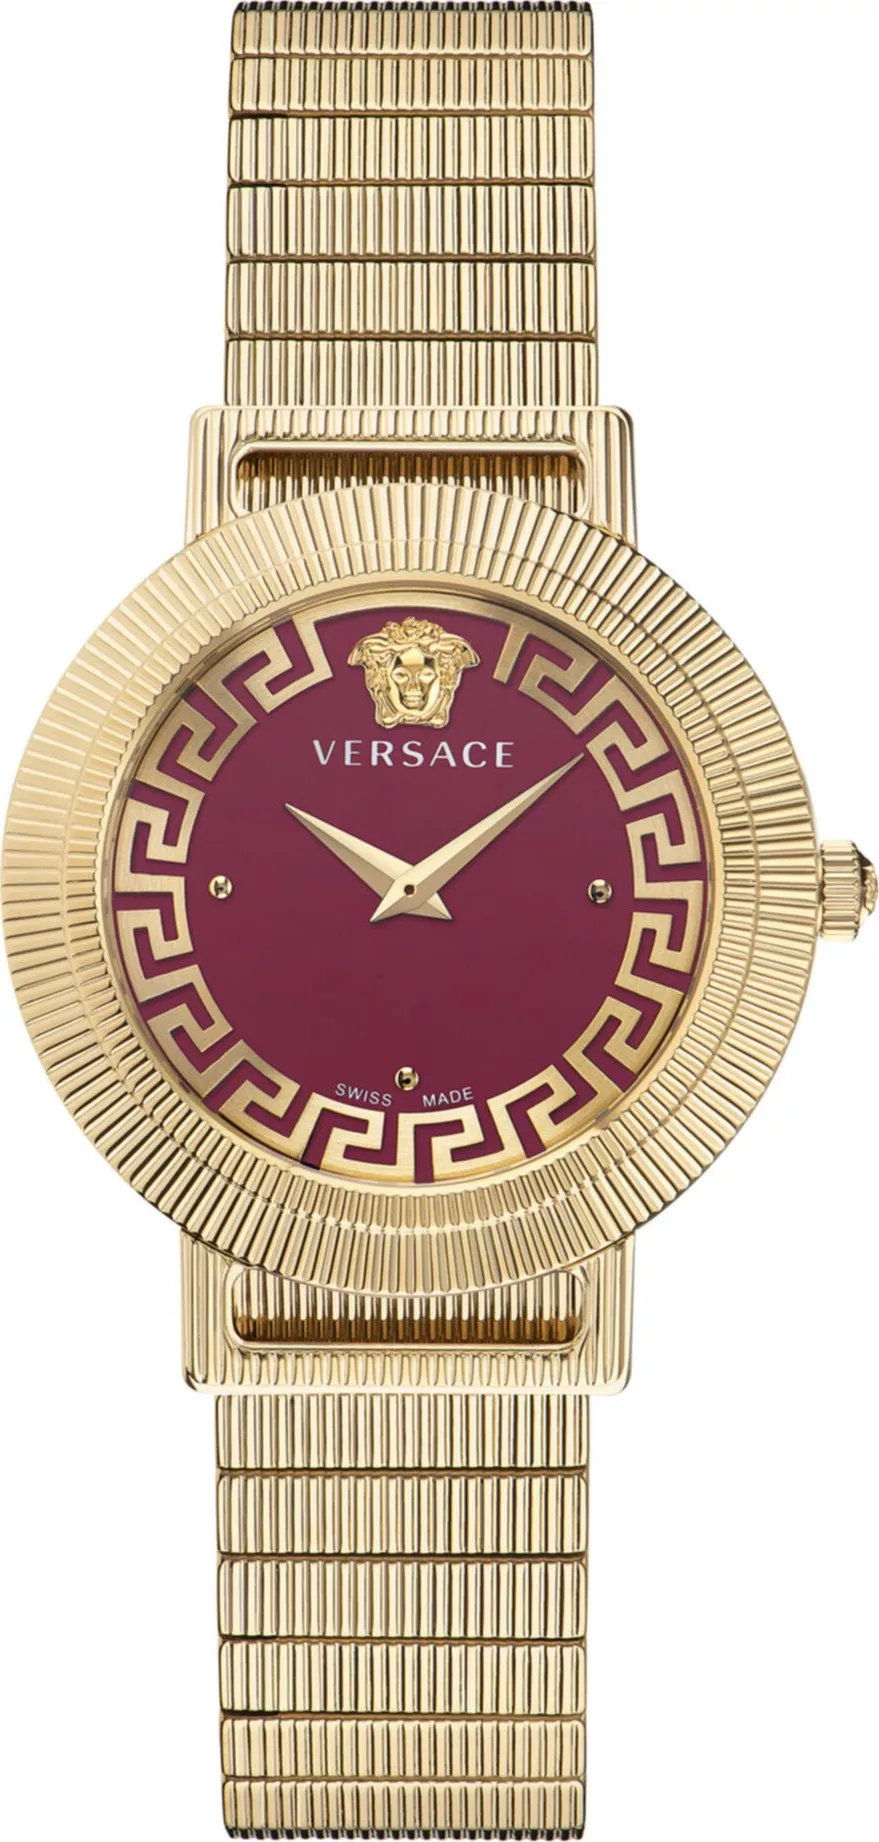 MSP: 101461 Versace Greca Chic Watch 36mm 30,350,000